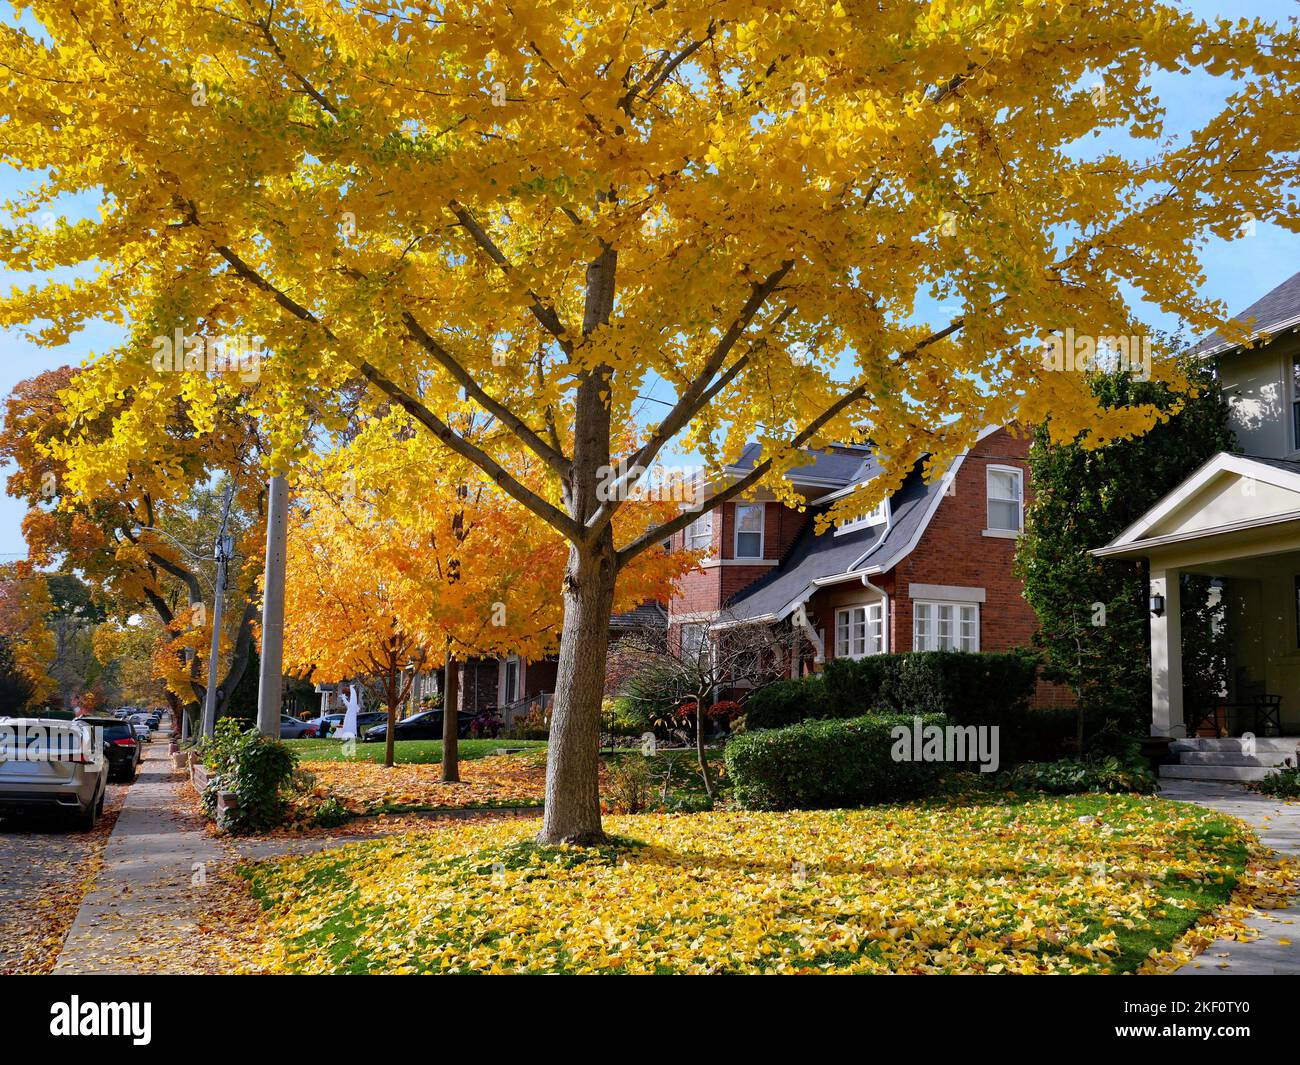 Rue résidentielle suburbaine avec une rangée d'érable de Norvège dans de belles couleurs d'automne jaune doré Banque D'Images